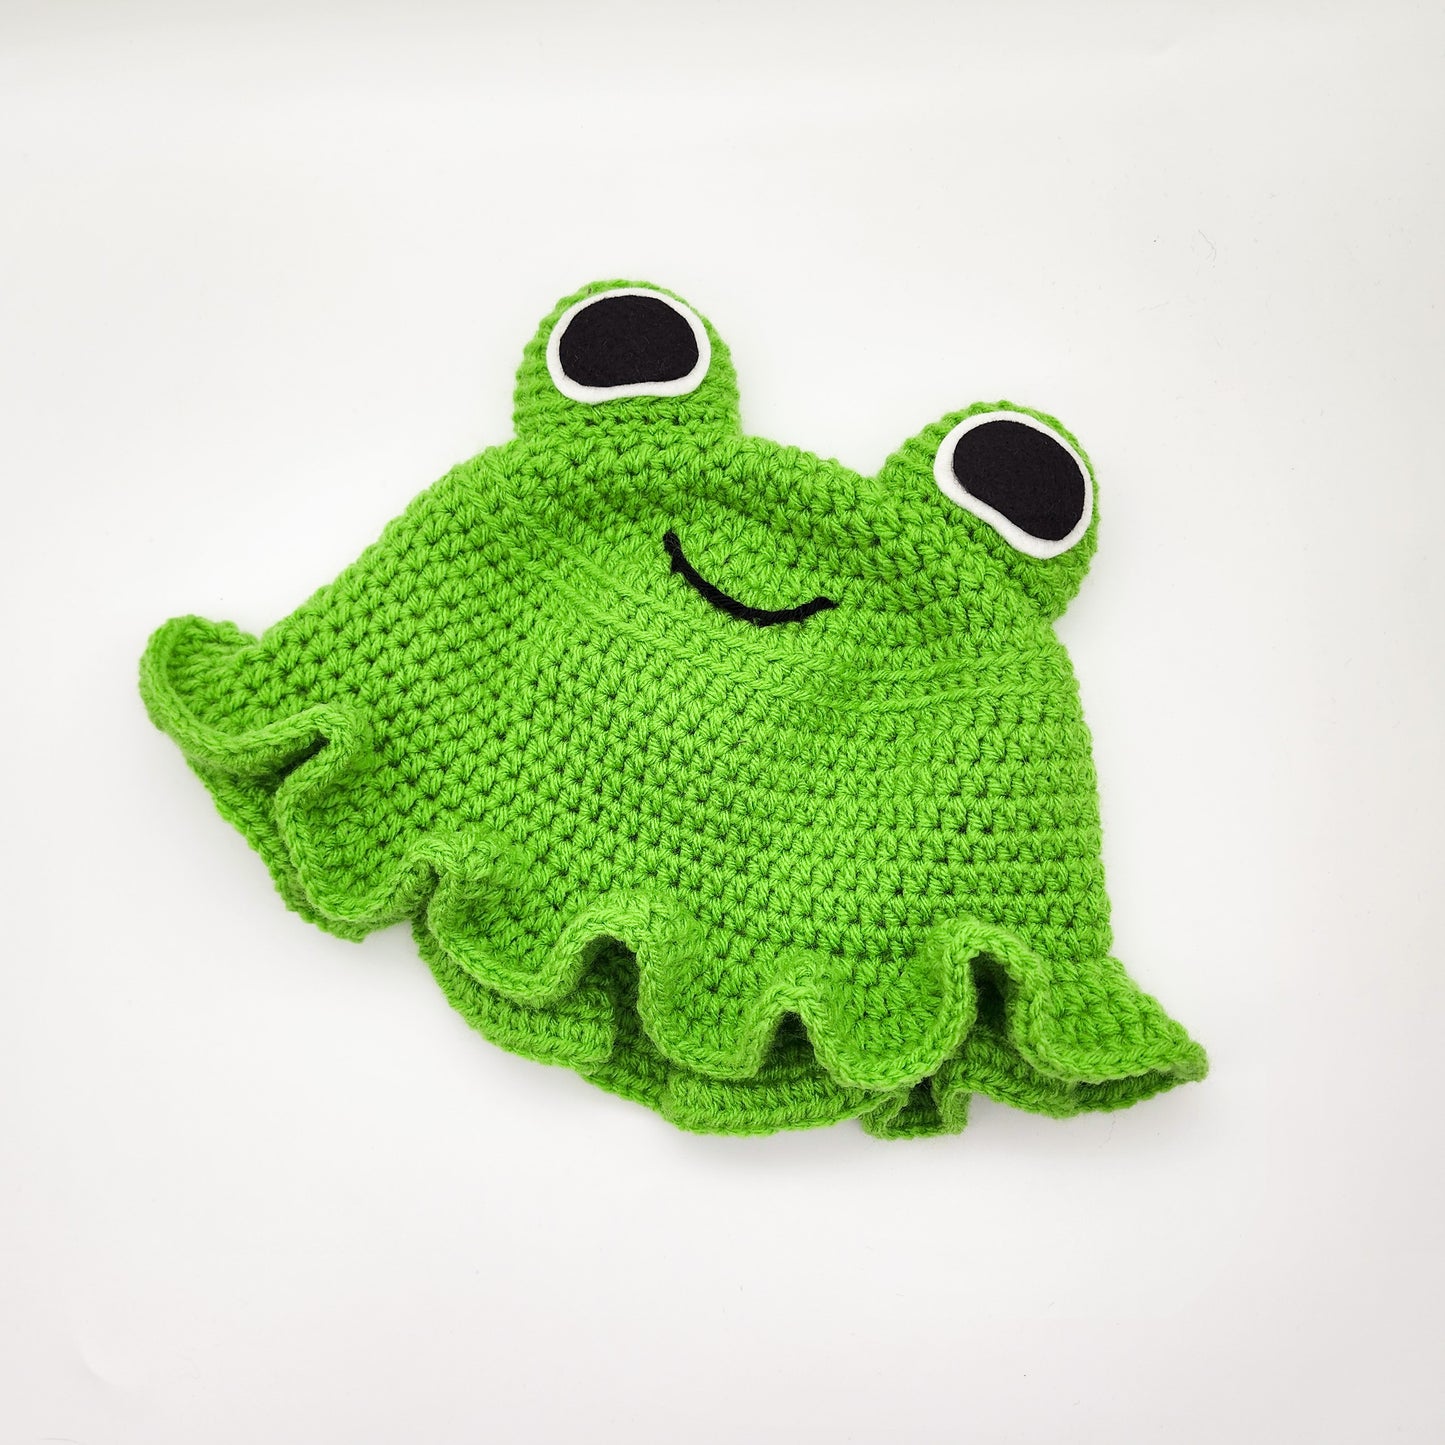 Froggy Bucket Hat